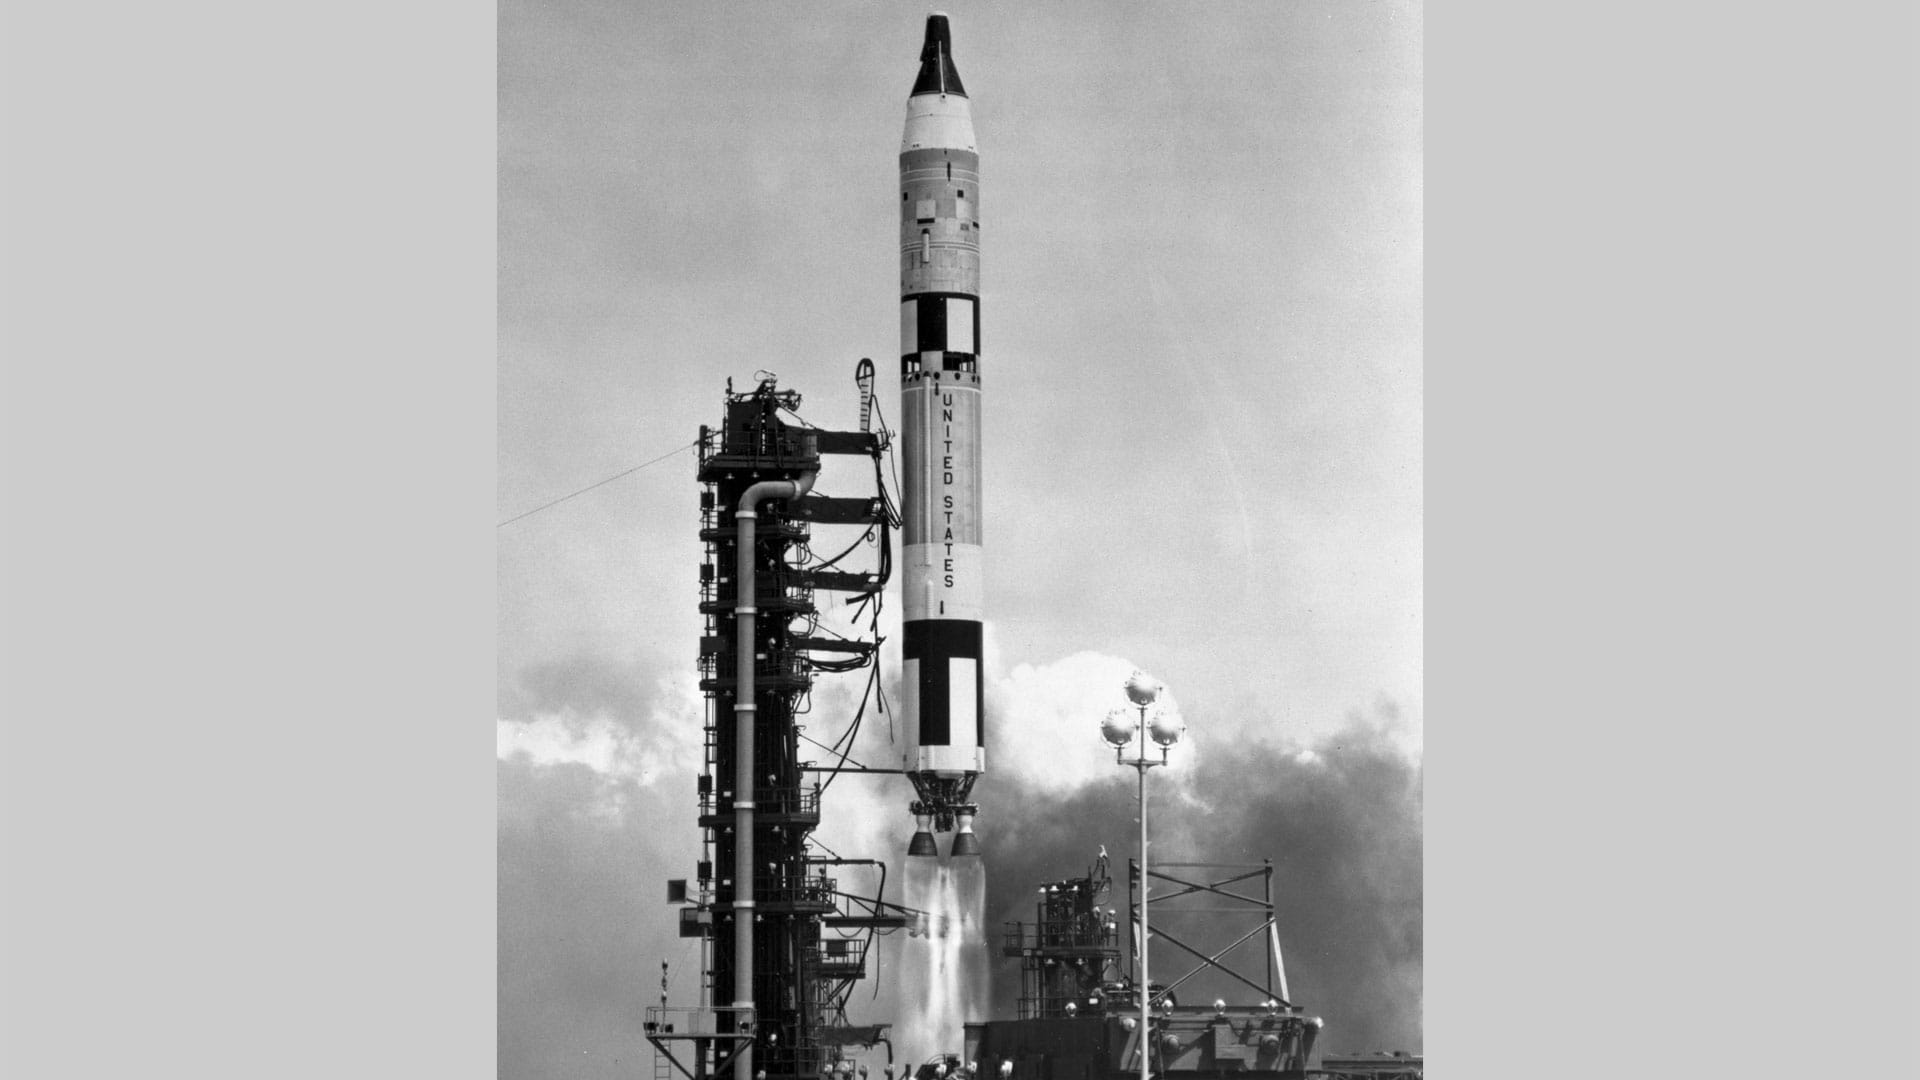 Gemini rocket lifting off